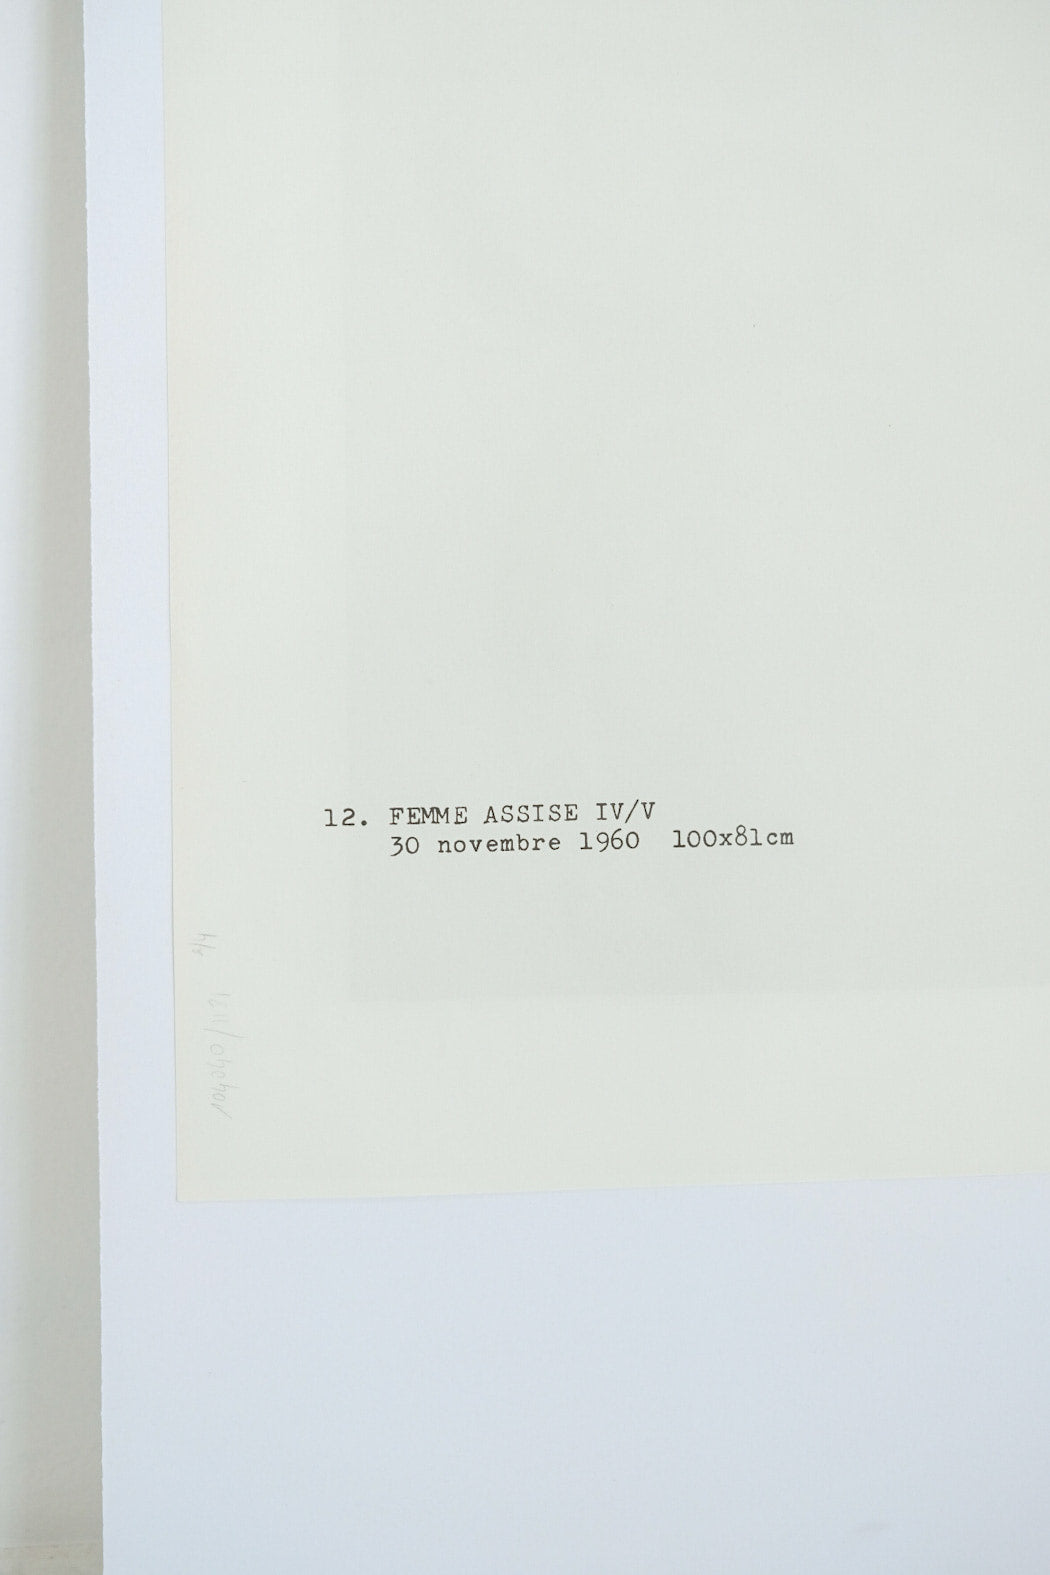 Joan Miro FEMME ASSISE IV/V Plate #12